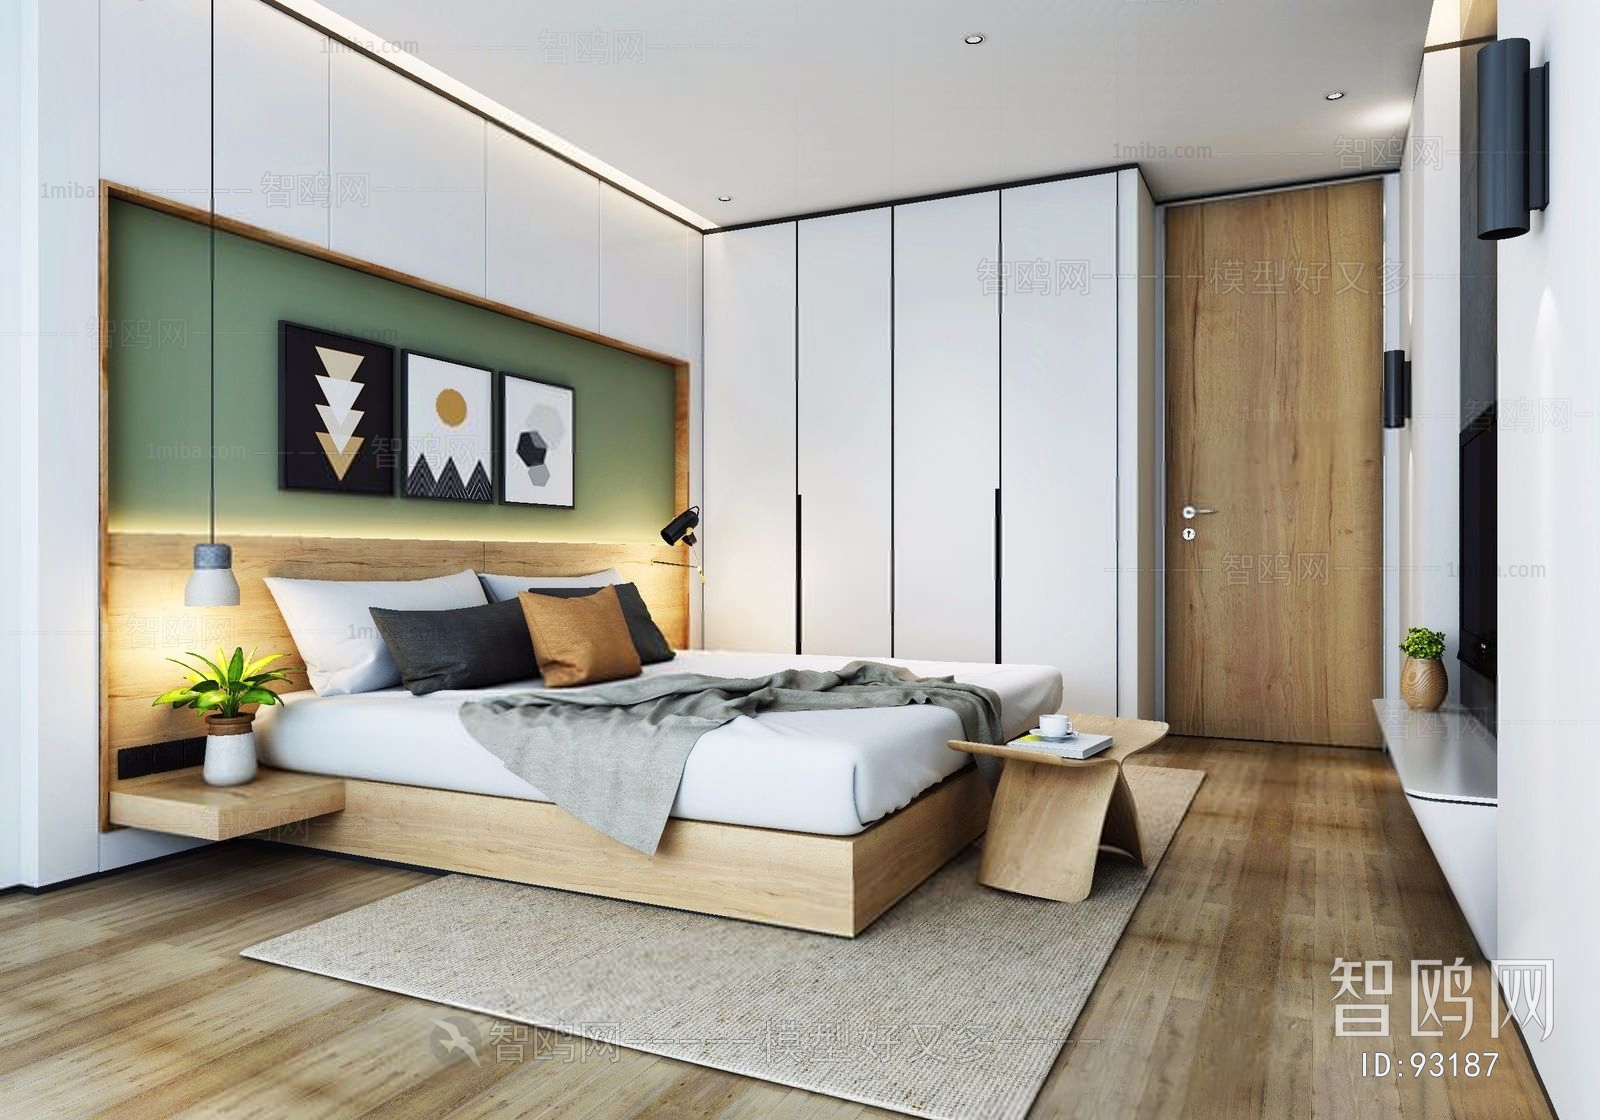 Modern Simple Style Bedroom